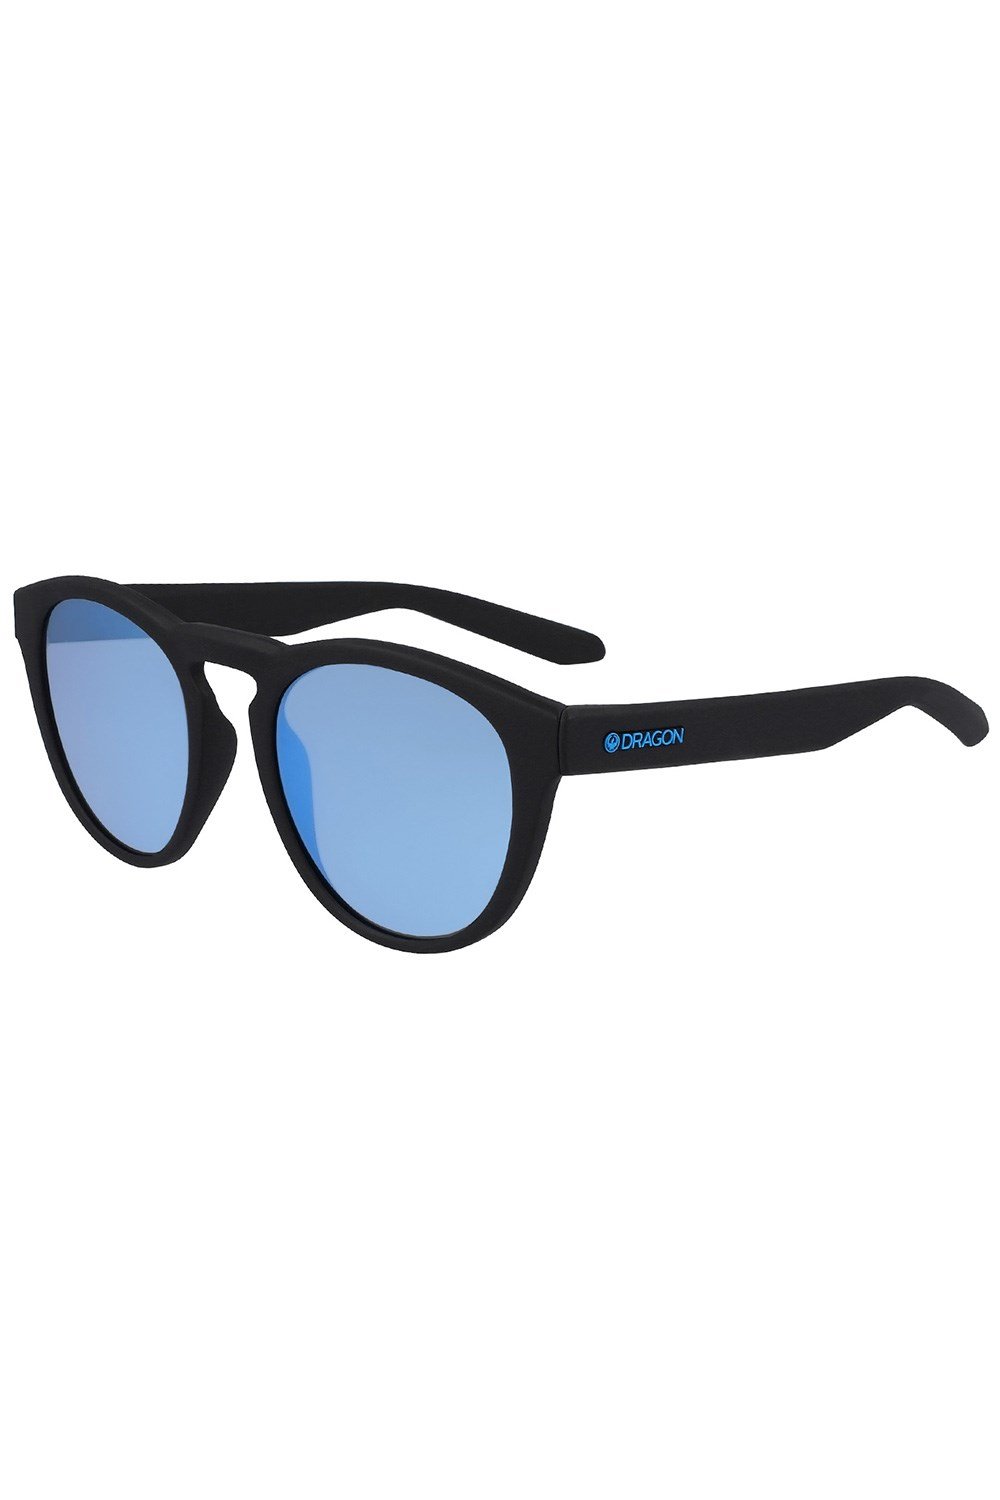 Opus Unisex Sunglasses -